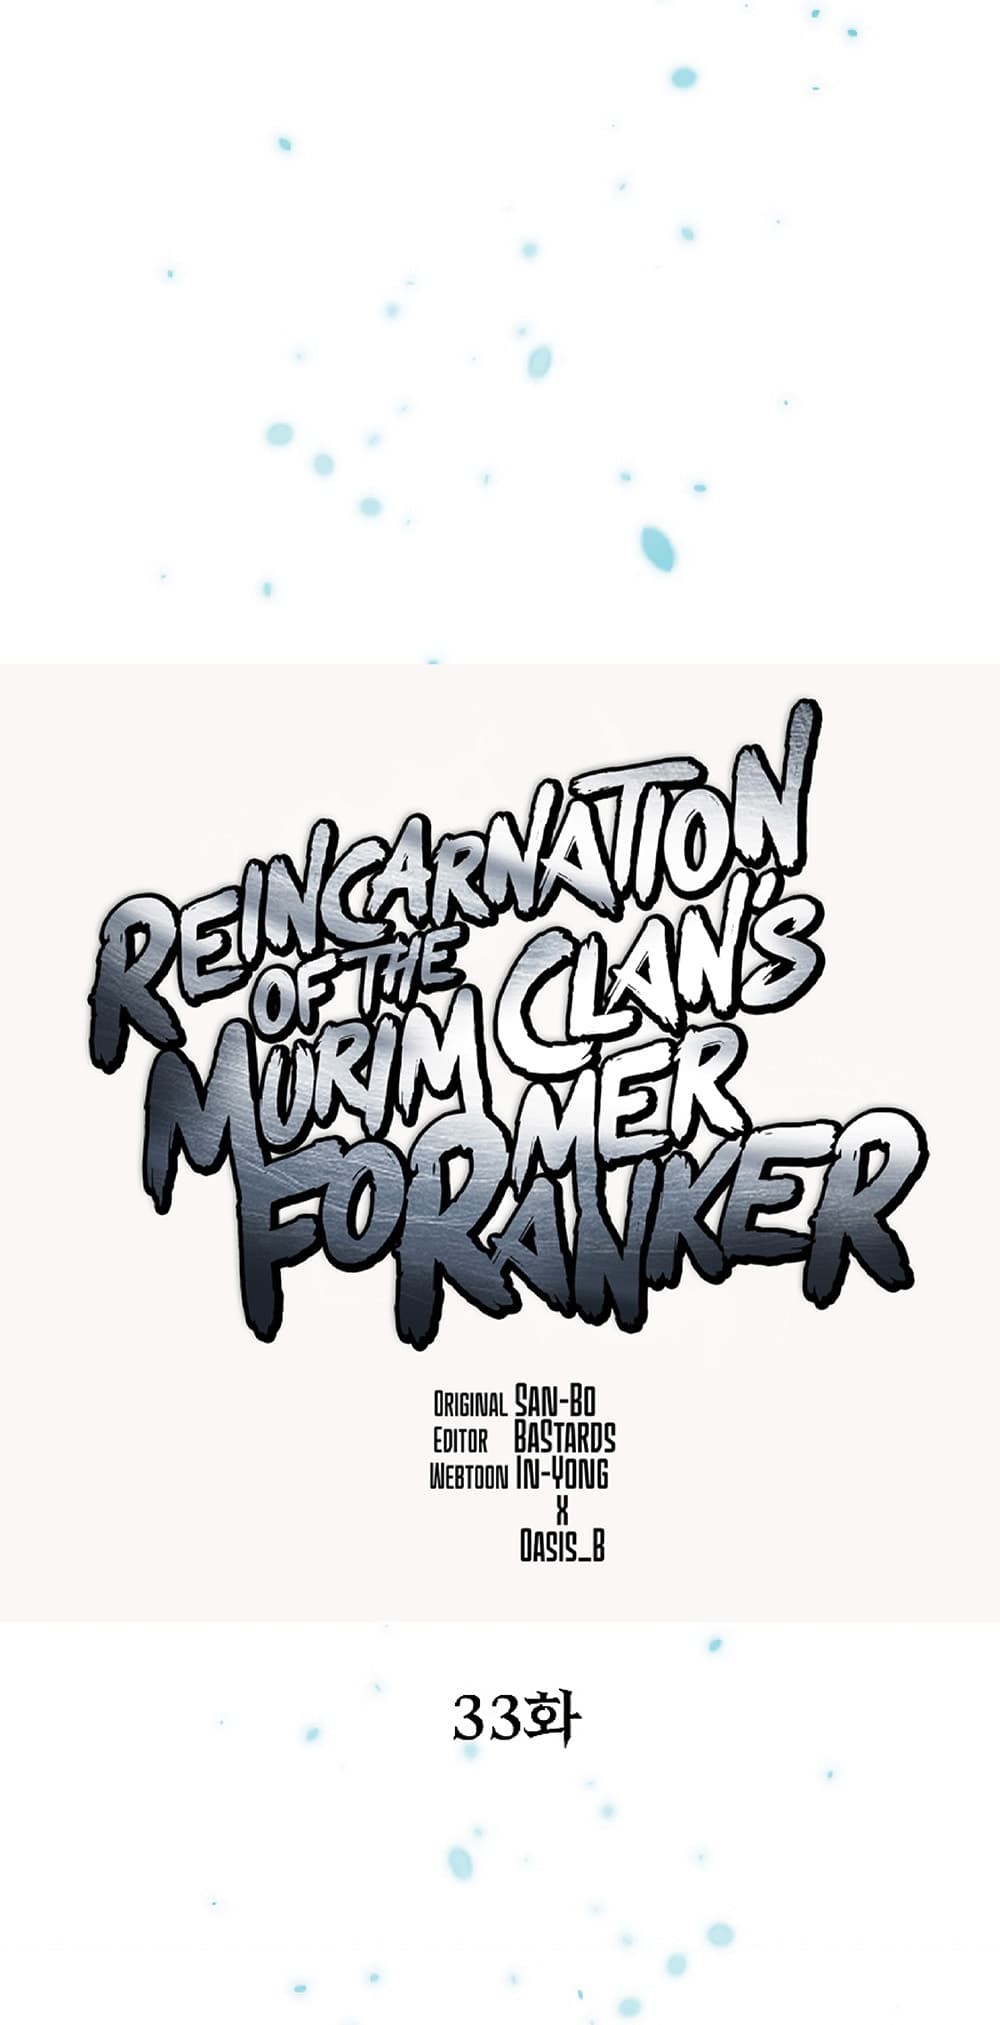 Reincarnation-of-the-Murim-Clans-Former-Ranker-33_27.jpg